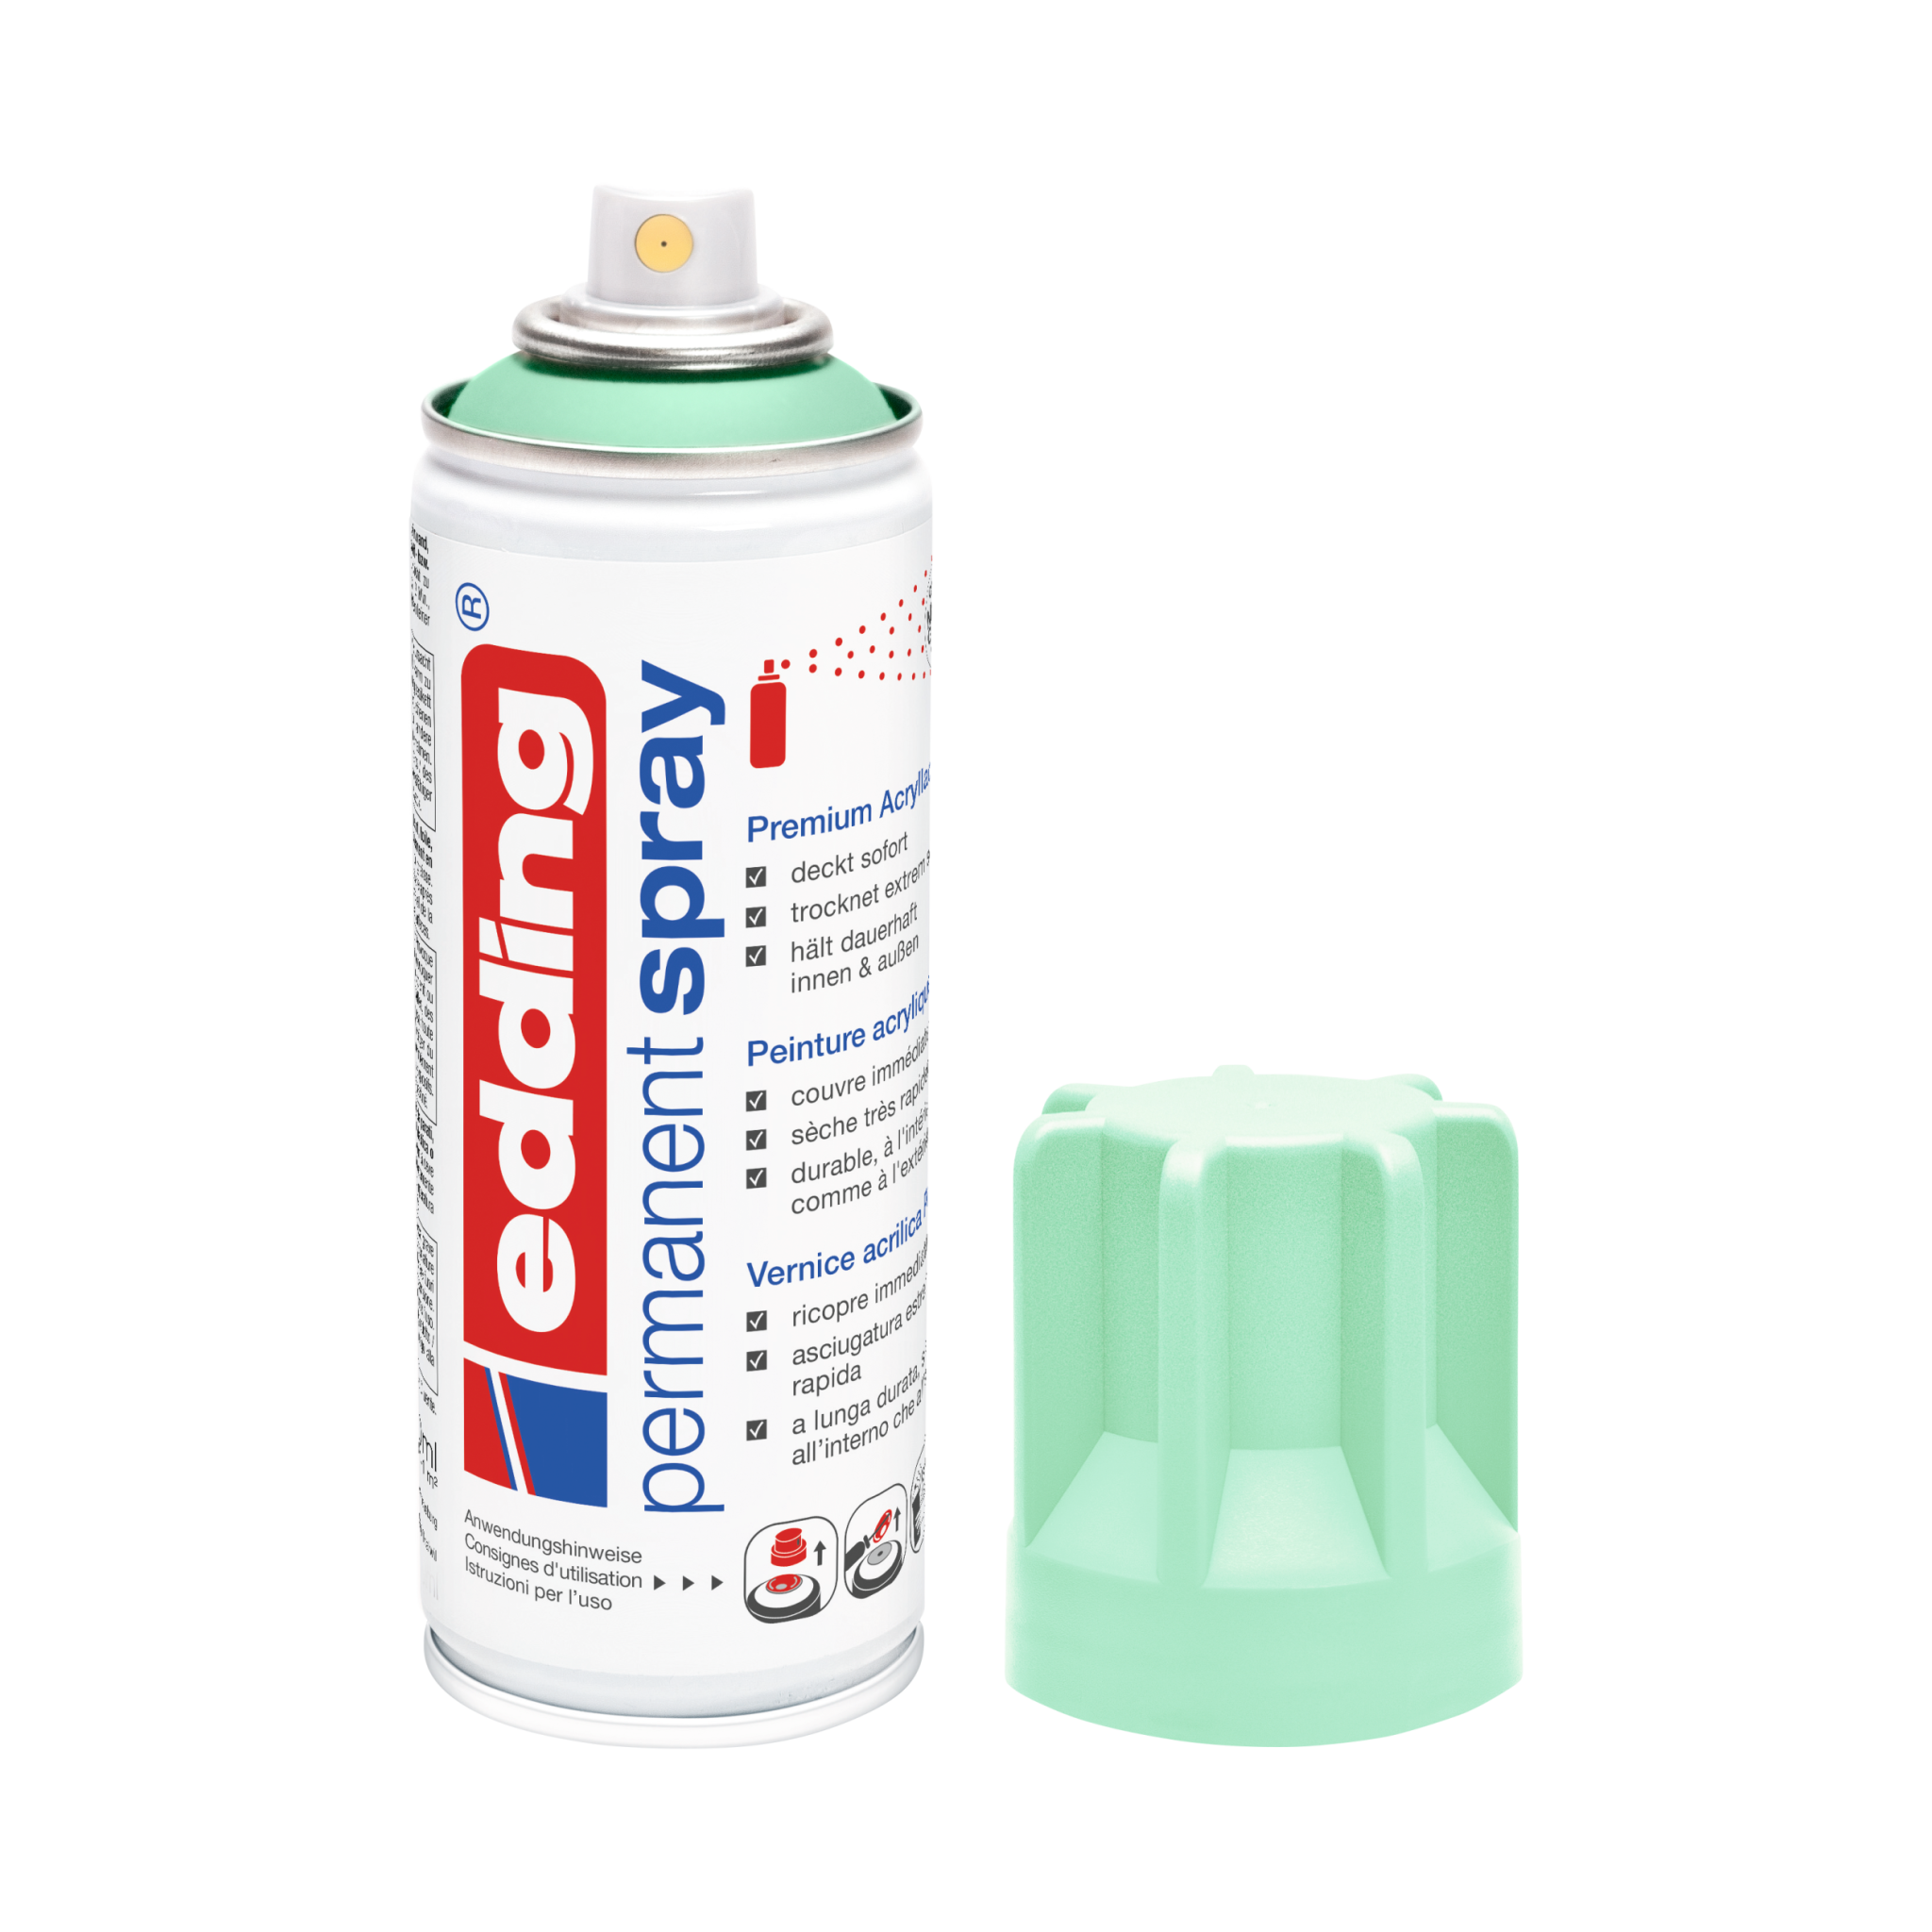 Eine Dose Permanentspray Acryllack Pastell & sanfte Farben der Marke Edding 5200, Sprühfarbe, mit abgenommener Kappe daneben platziert, isoliert auf einem weißen Hintergrund.